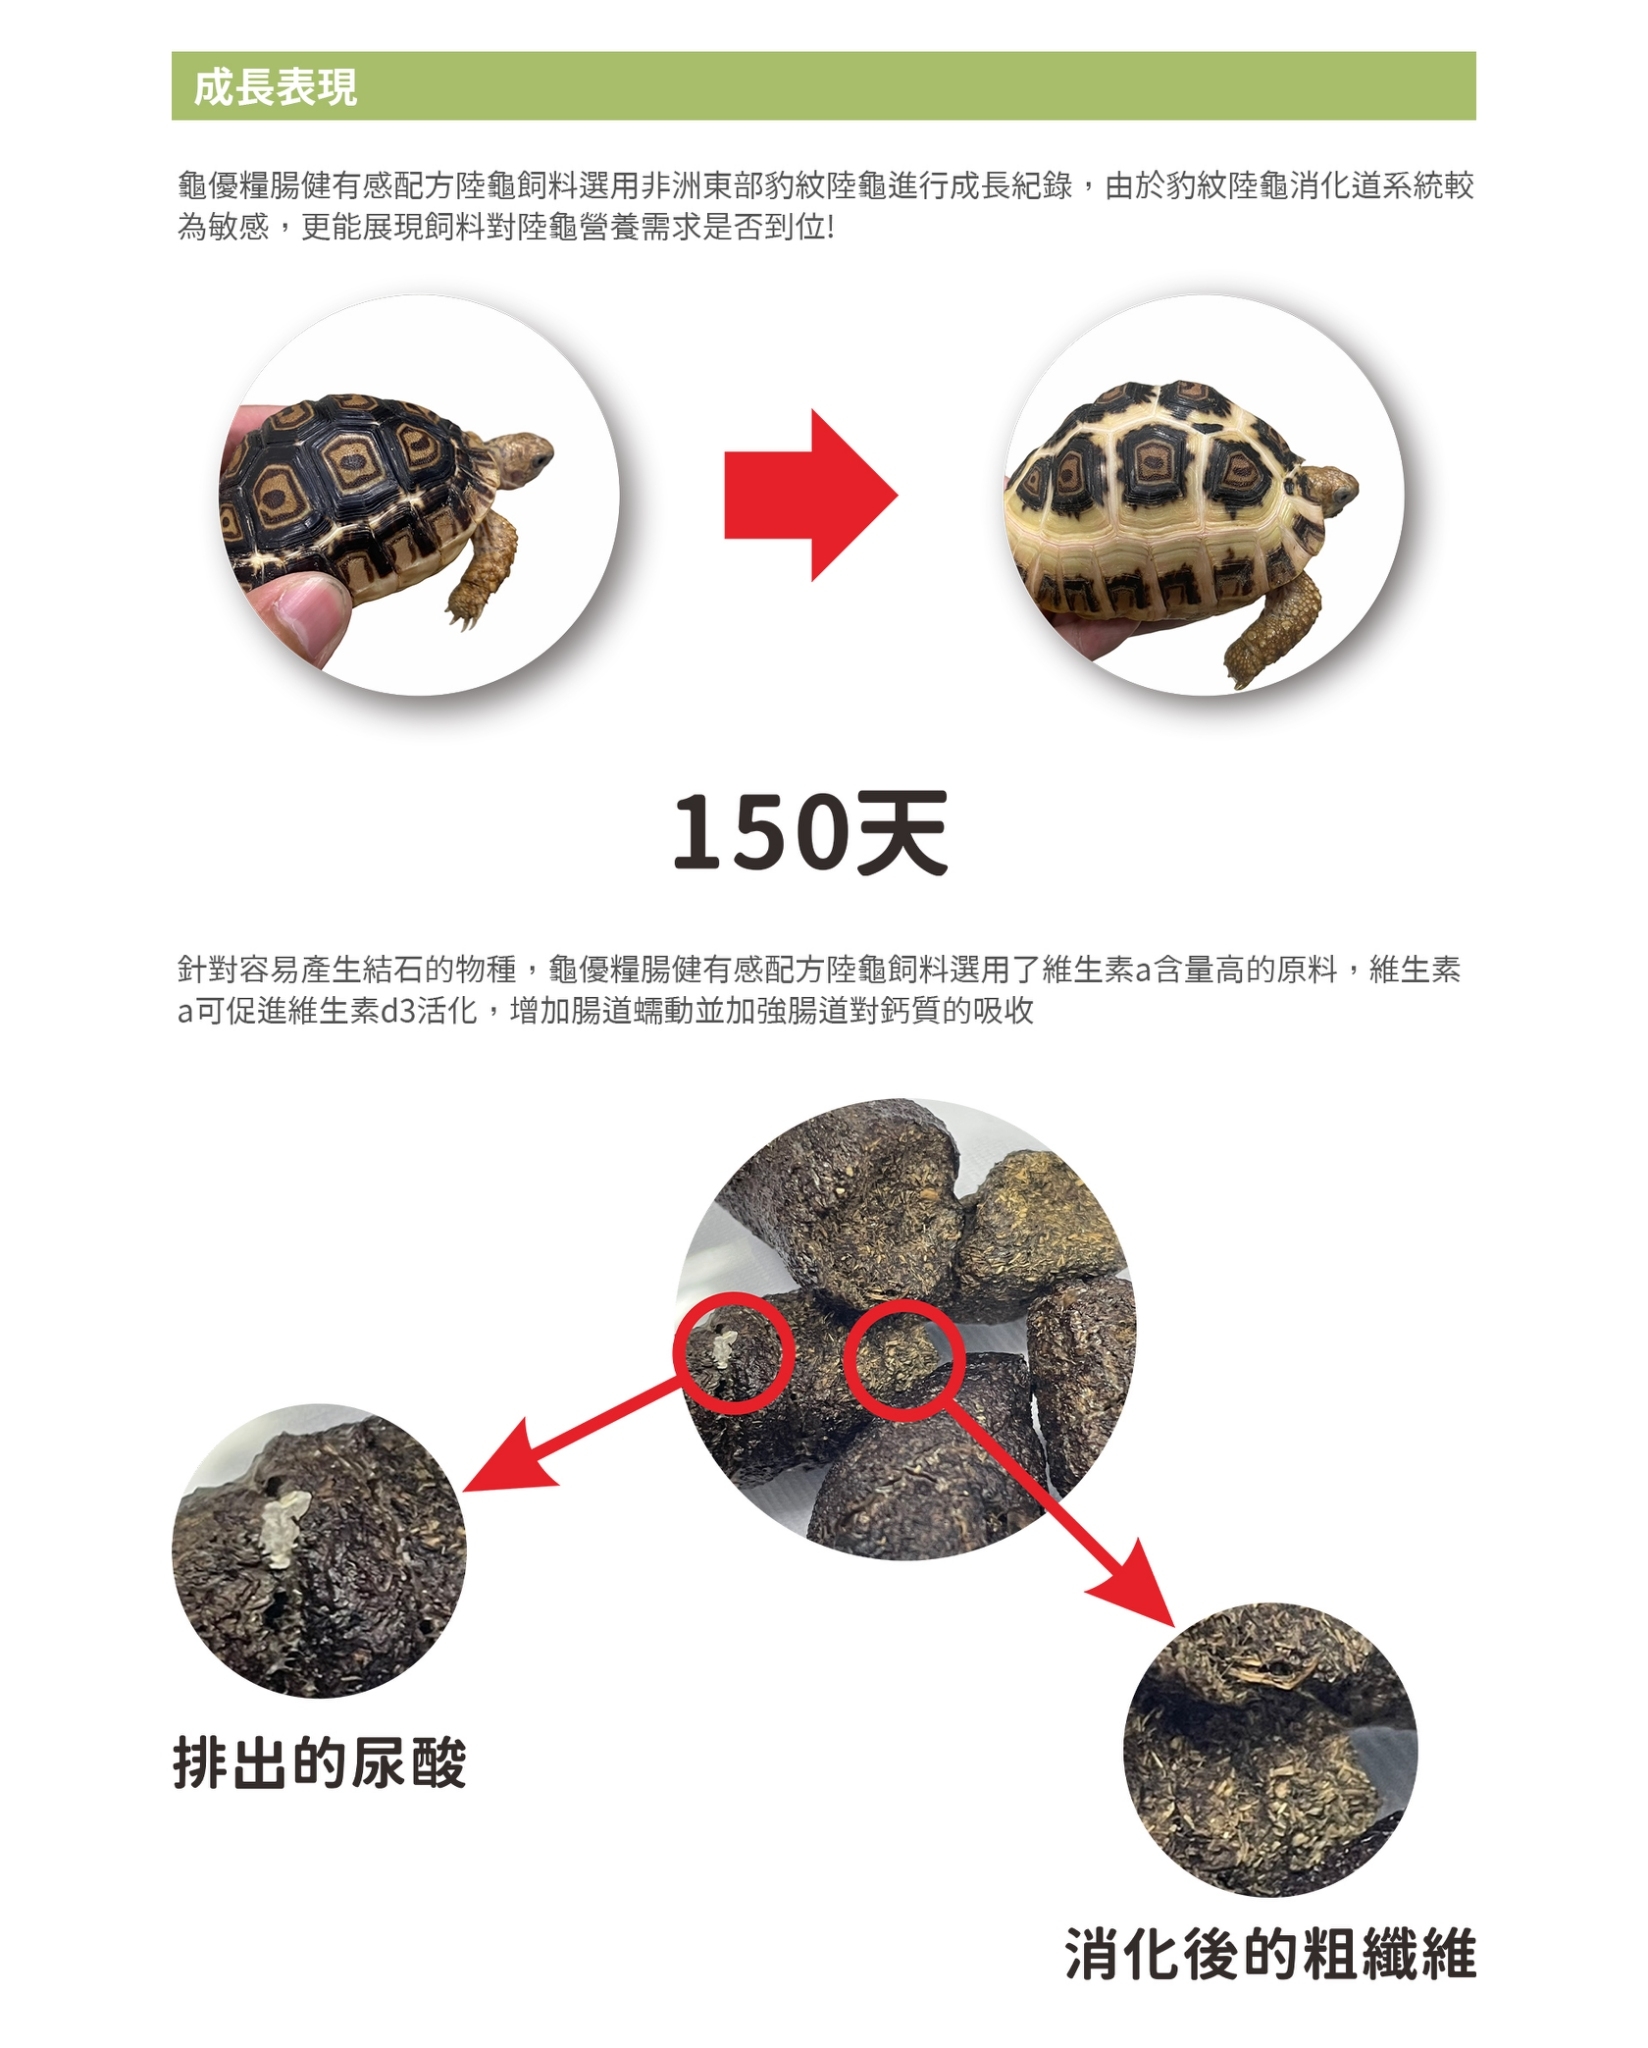 陸龜食用龜優糧在成長及排酸上效果顯著.jpg